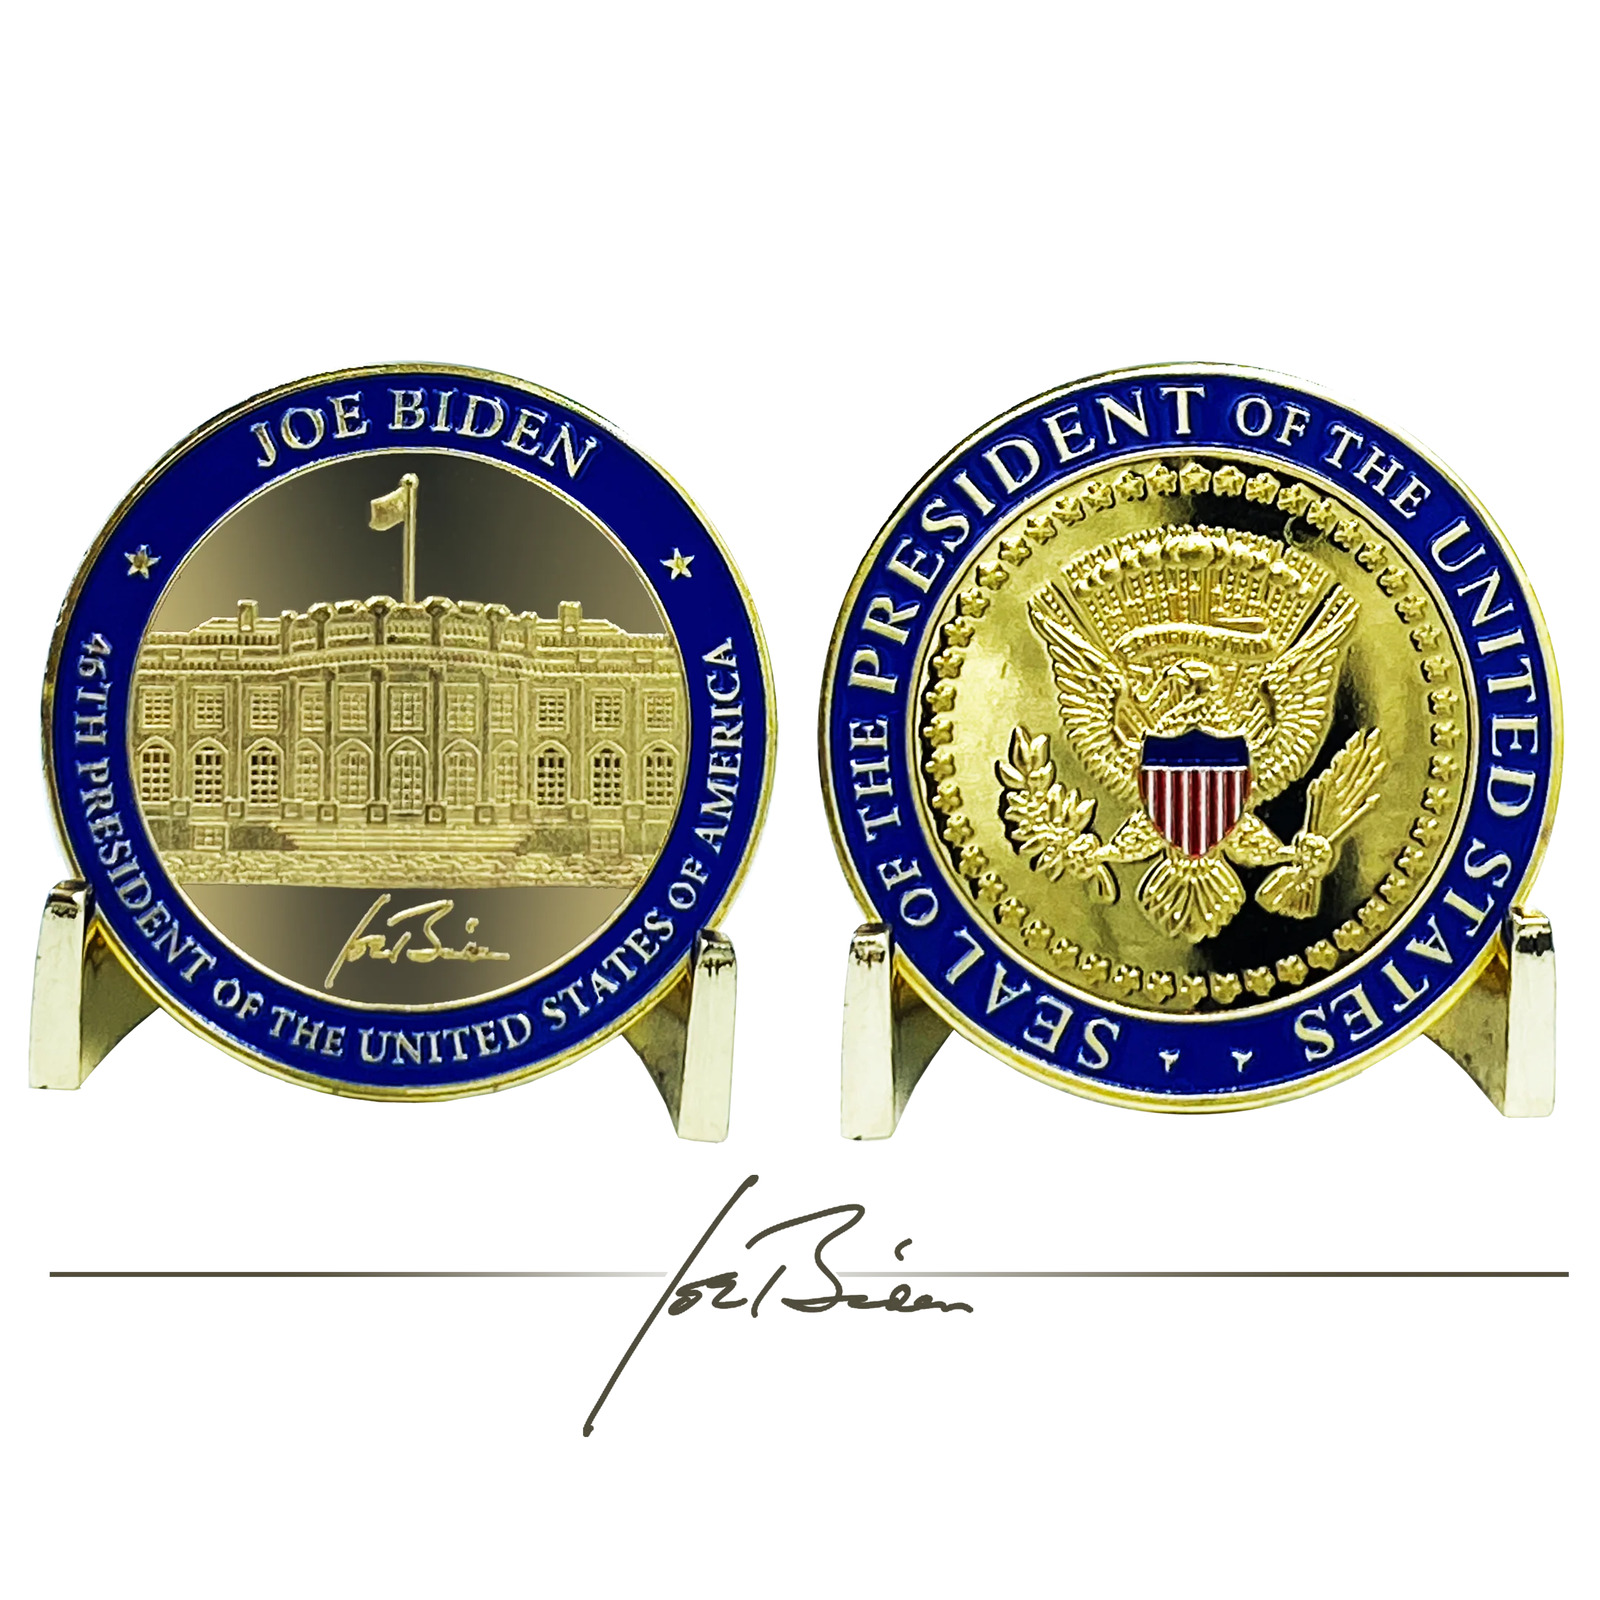 46th President Joe Biden Challenge Coin White House POTUS former Vice President